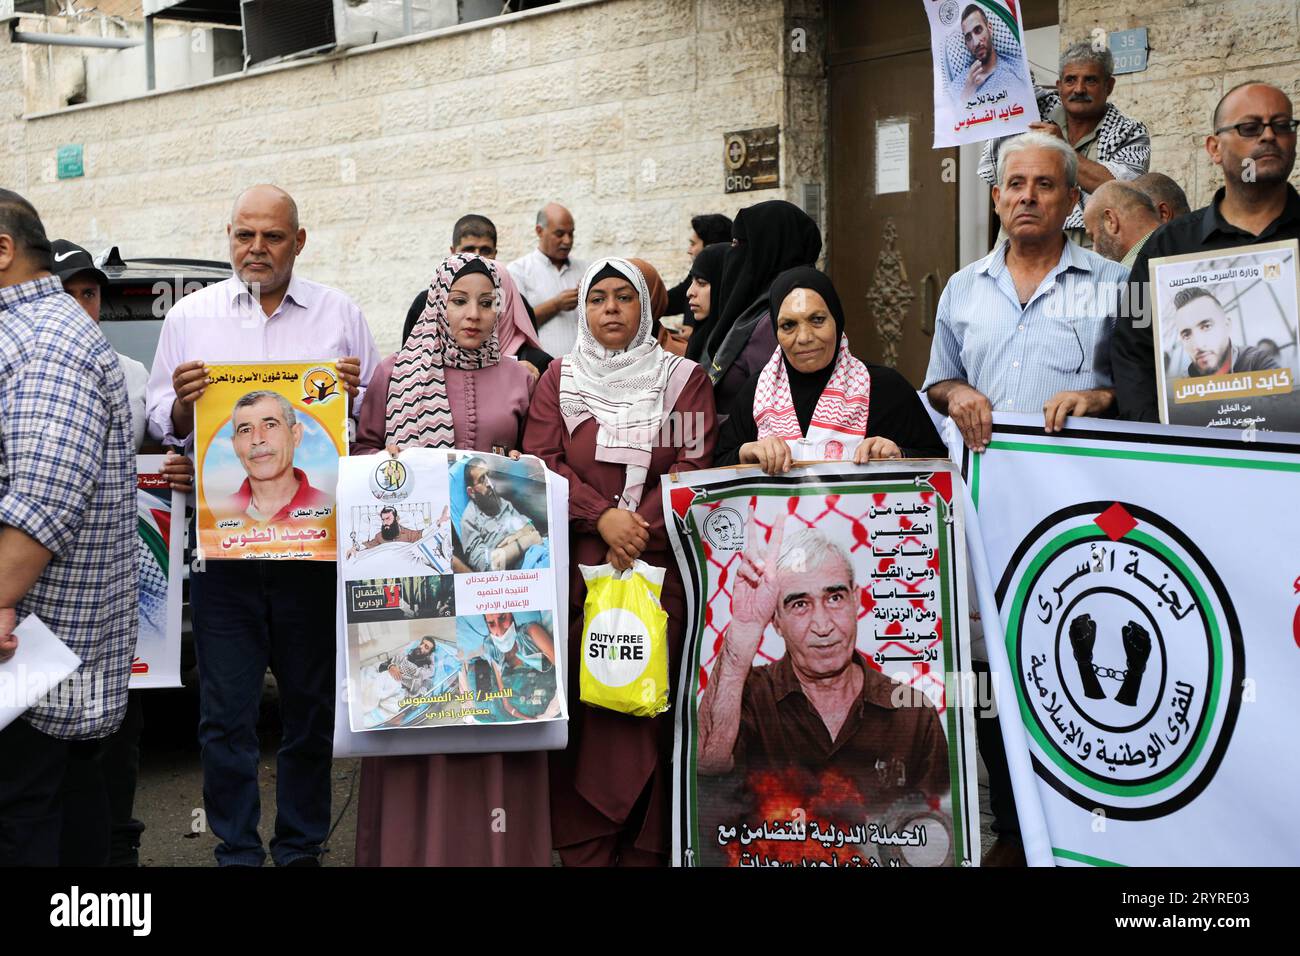 Nahost-Nachrichten/Gaza/Palästinensische Gebiete Palästinenser nehmen an einem Solidaritätsprotest mit den Gefängnissen Teil, die am 2. Oktober 2023 vor dem Büro des Roten Kreuzes in Gaza-Stadt in israelischen Gefängnissen festgehalten wurden. Nach den jüngsten Zahlen von Addameer, der palästinensischen Gefangenenunterstützungs- und Menschenrechtsvereinigung, befinden sich derzeit 4.900 palästinensische politische Gefangene in israelischen Gefängnissen und Haftanstalten, darunter 155 Kinder und 32 weibliche Gefangene. The Gaza Strip Palestine Copyright: XMahmoudxxAjjourx C08A1137 Credit: Imago/Alamy Live News Stockfoto